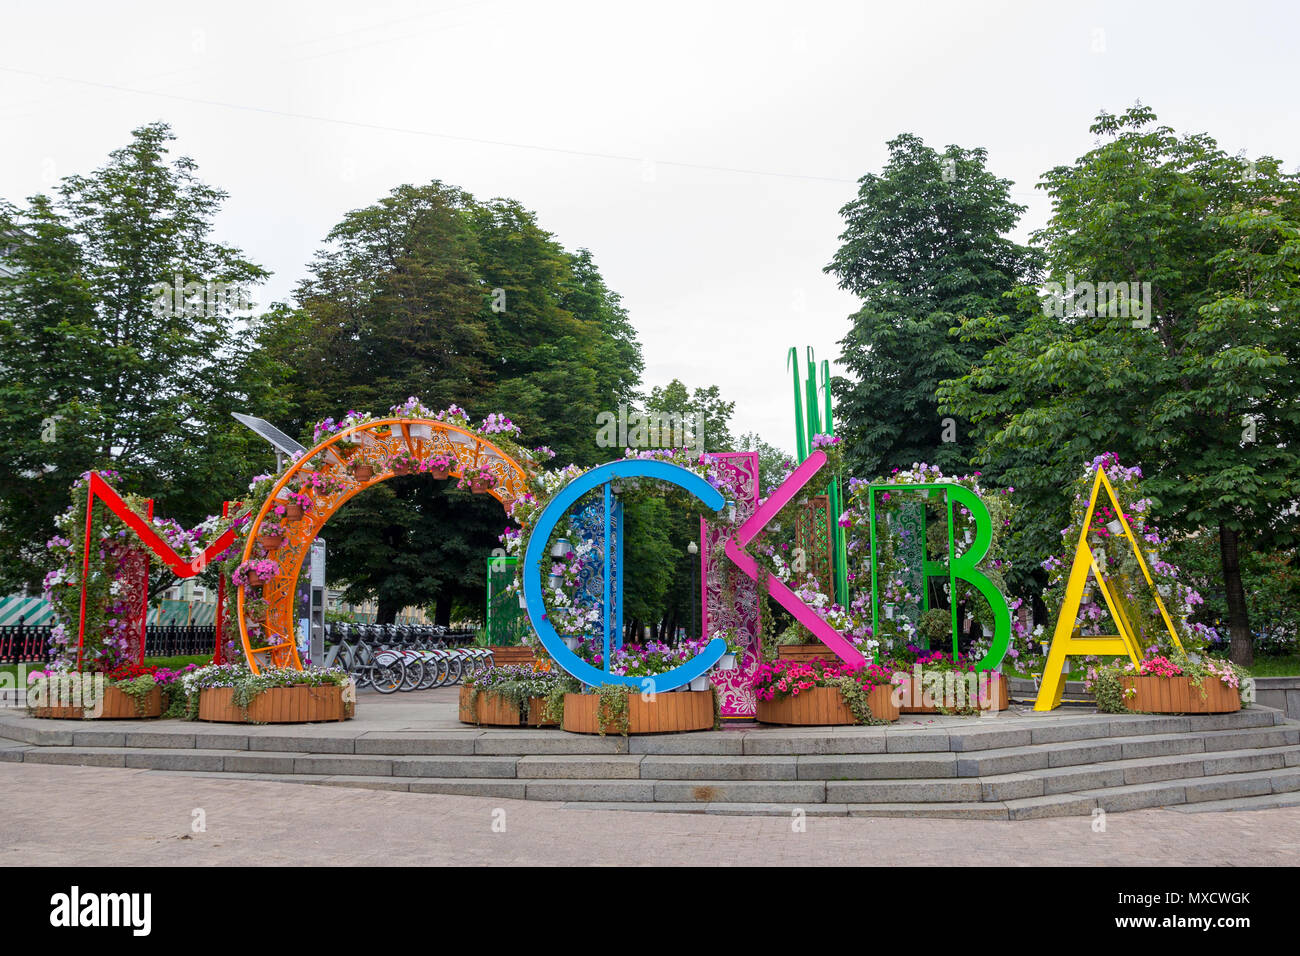 Area pedonale nel centro di Nikitsky Blvd, Mosca decorata con grandi lettere colorate e decorate con fiori freschi, ortografia Mosca in russo Foto Stock